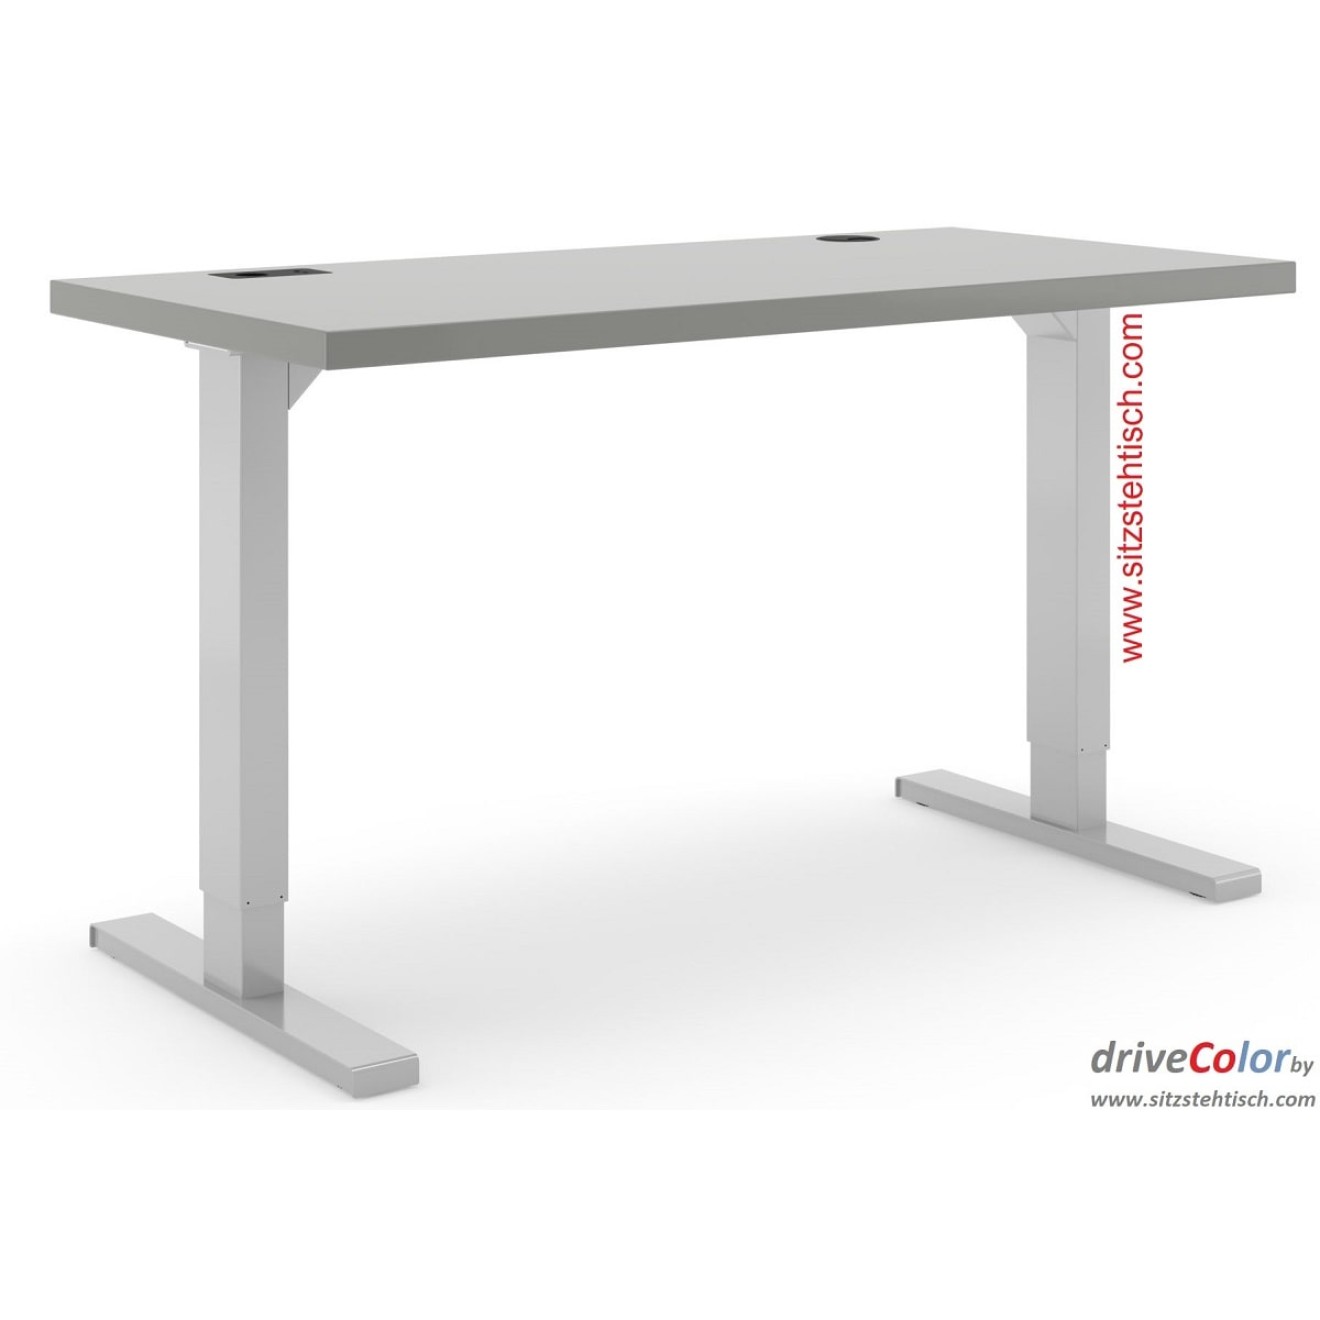 Schreibtisch - driveColor - elektrisch höhenverstellbar - Grau-Silber mit Gleitern aus Kunststoff